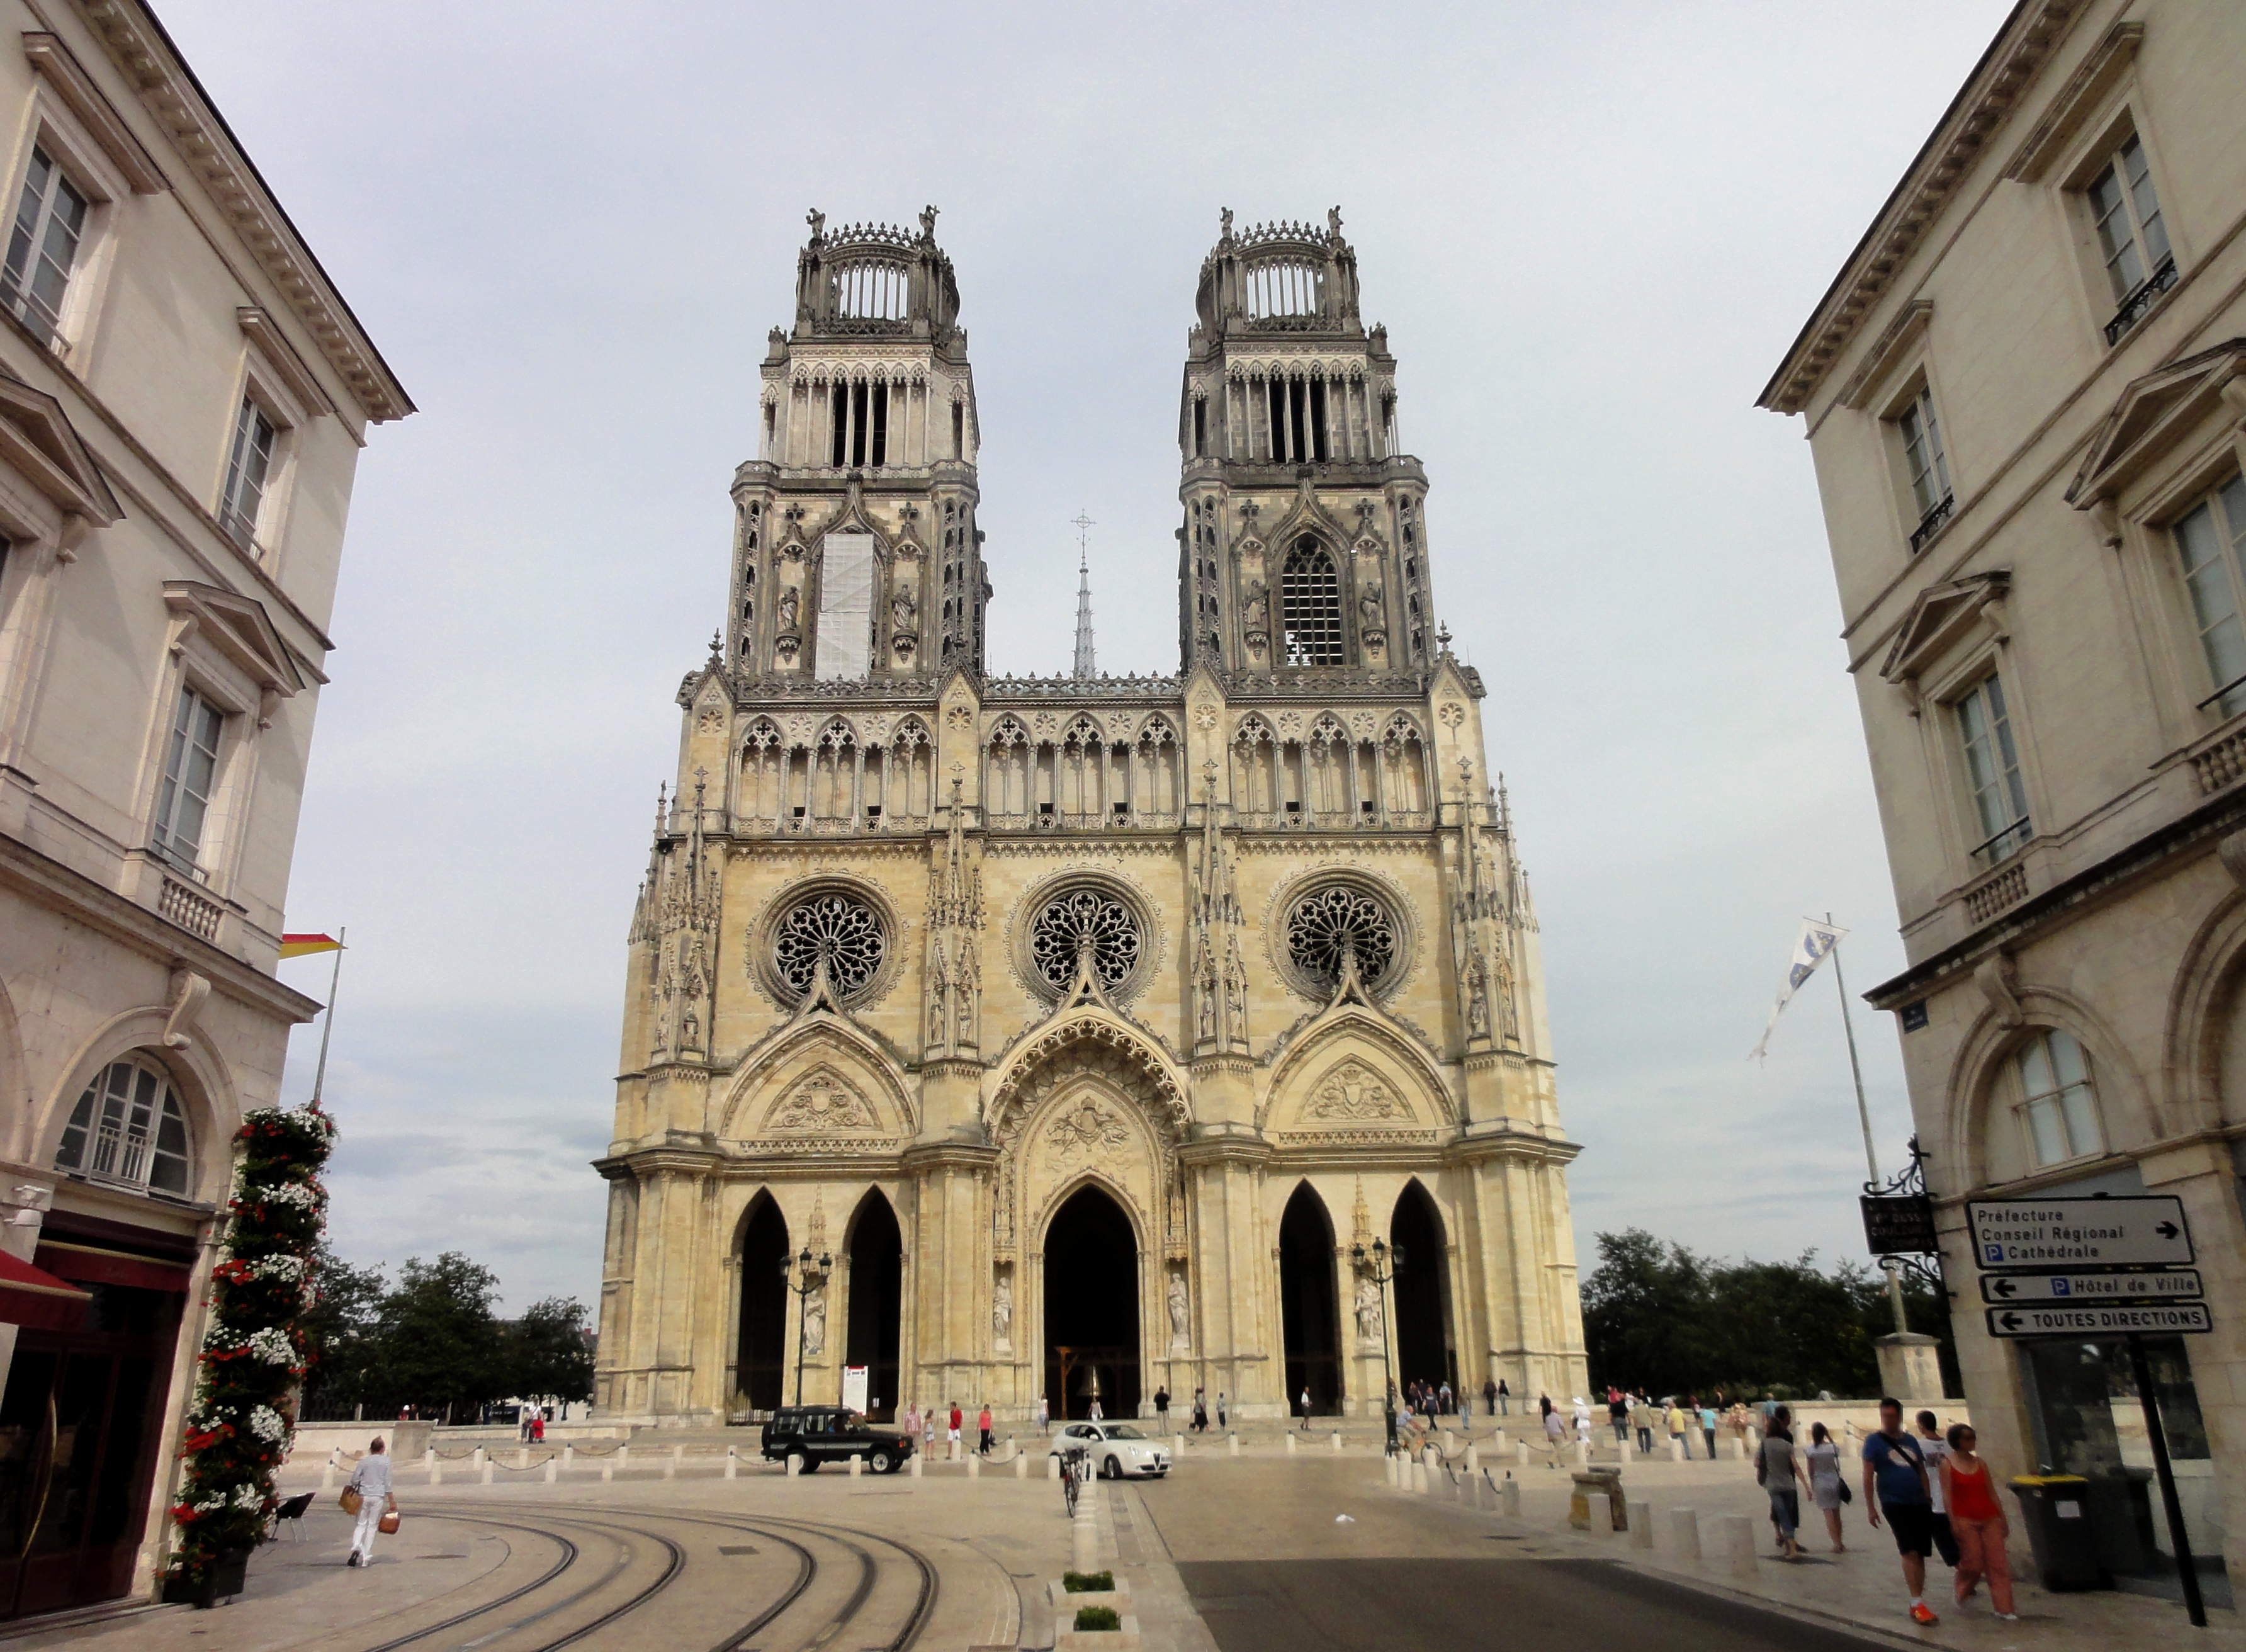 Cathédrale d'Orléans